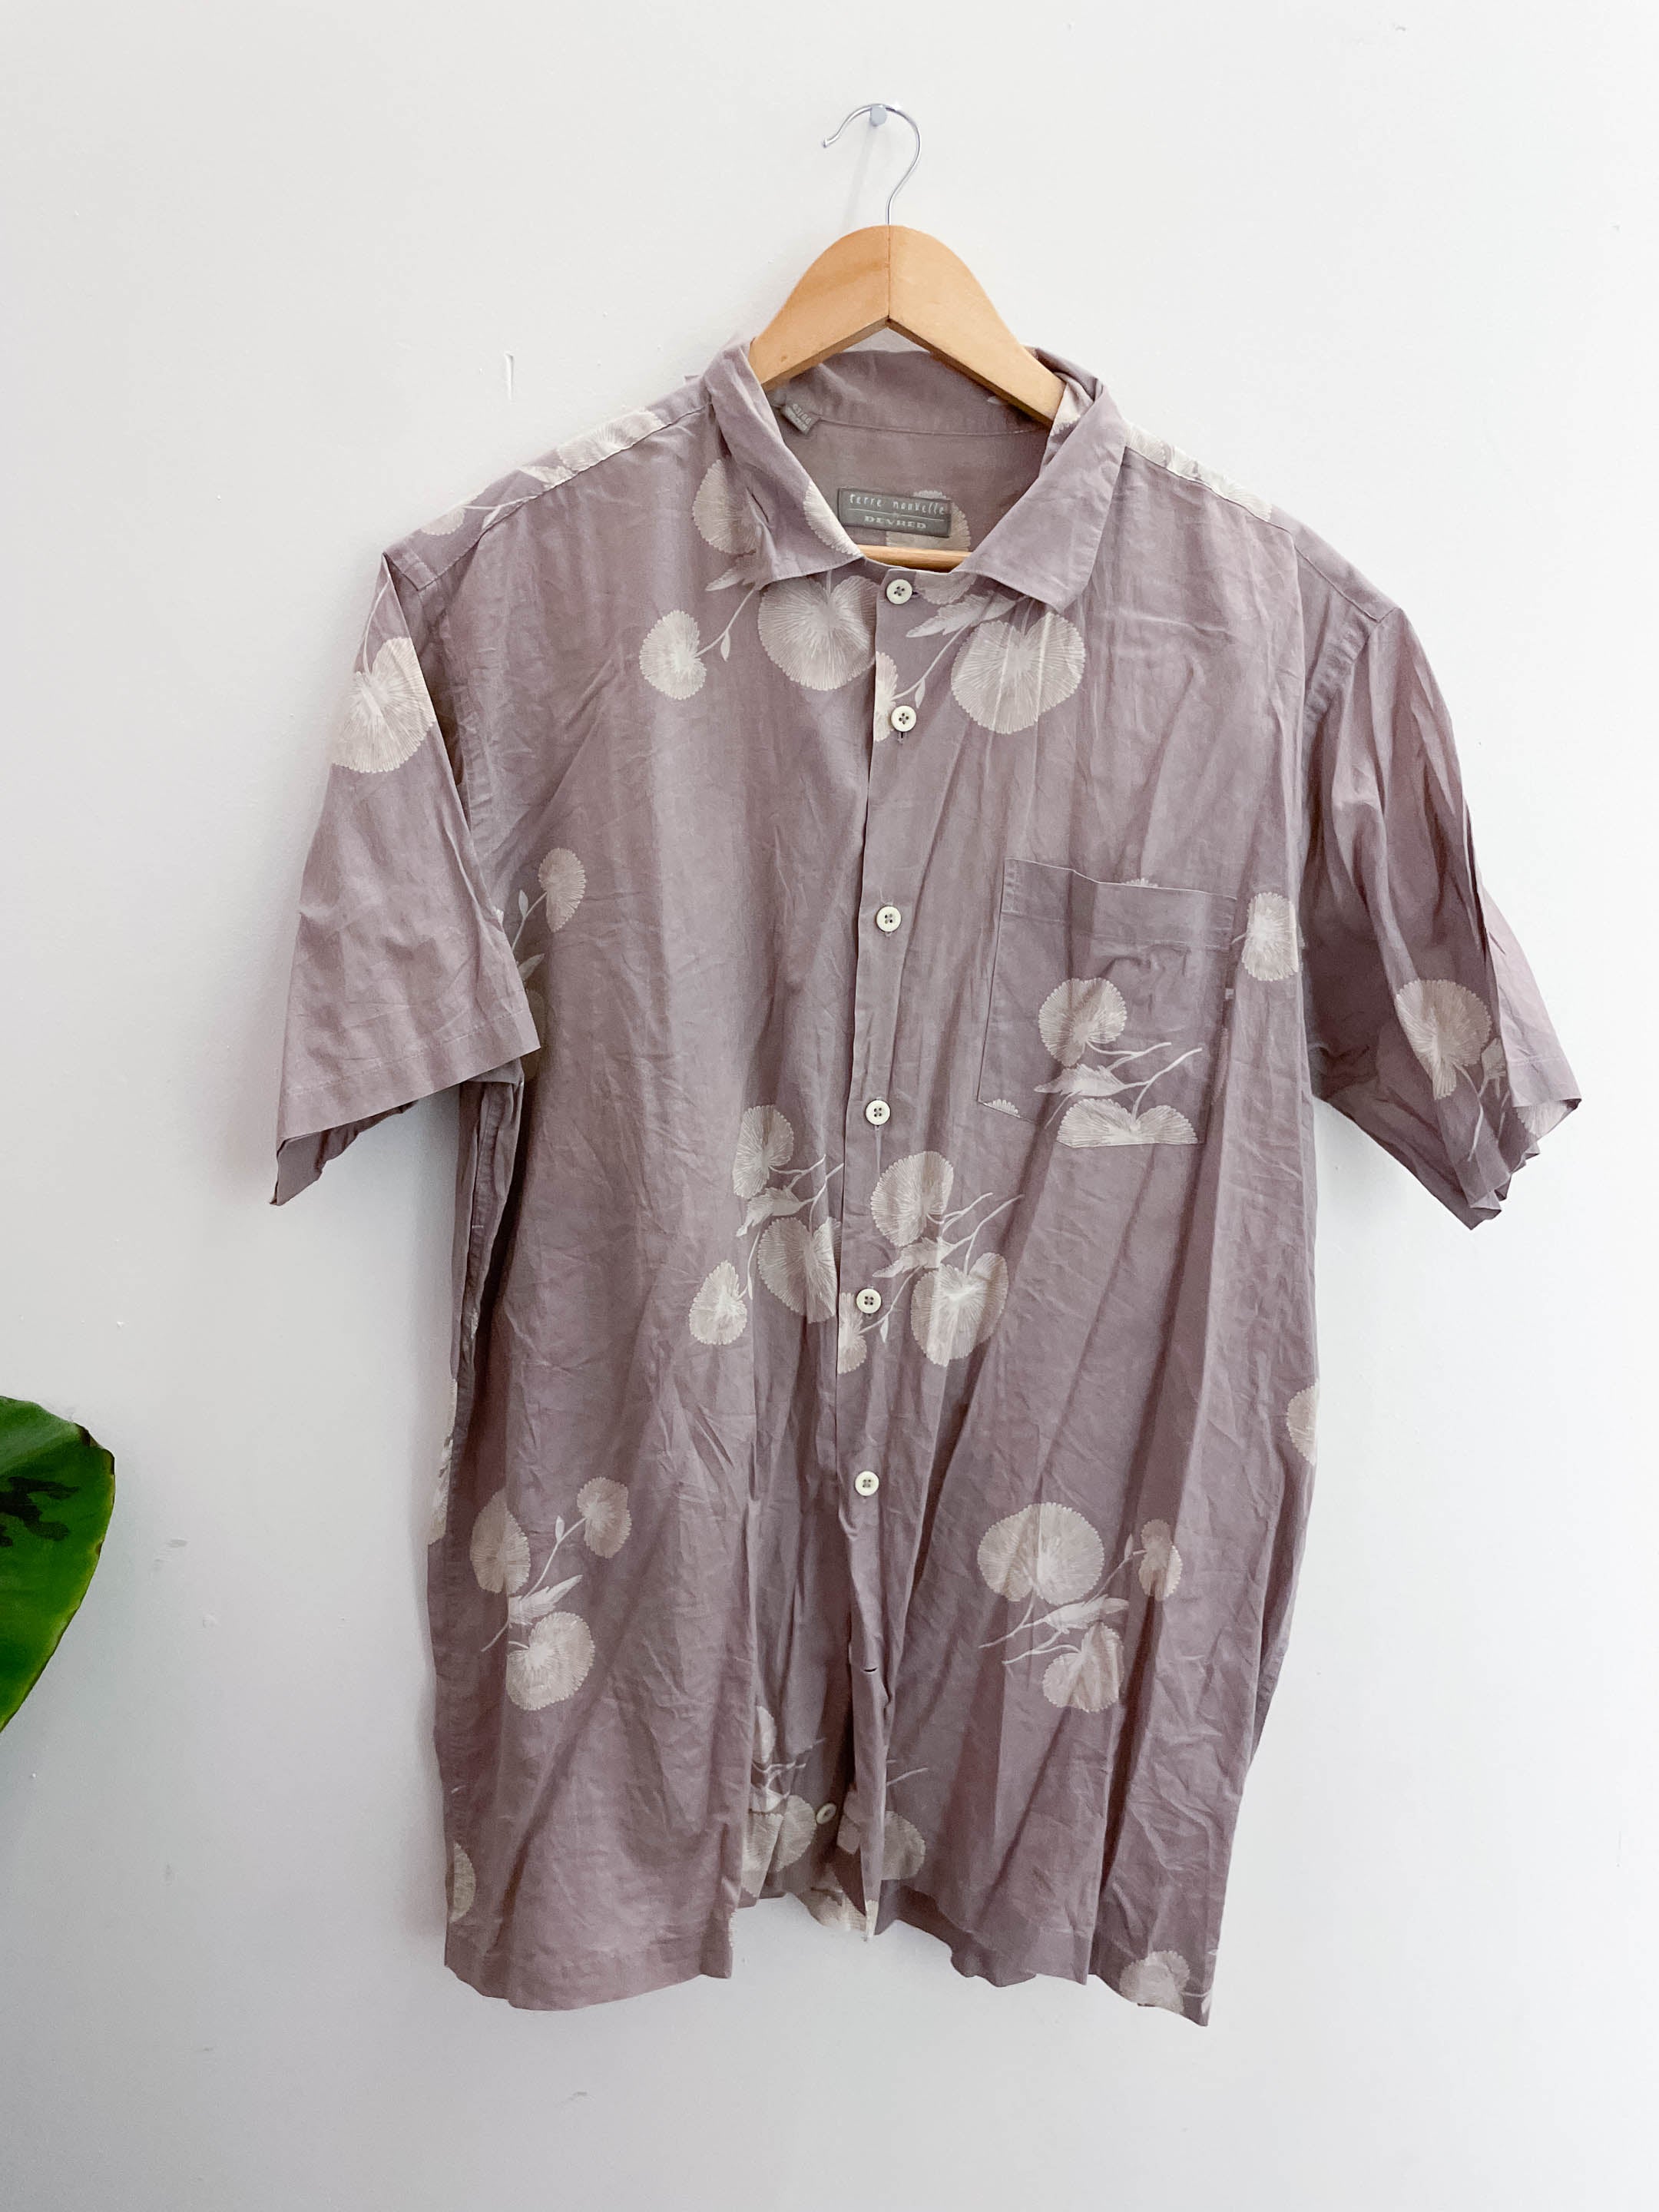 Vintage devred brown floral pattern mens shirt size M